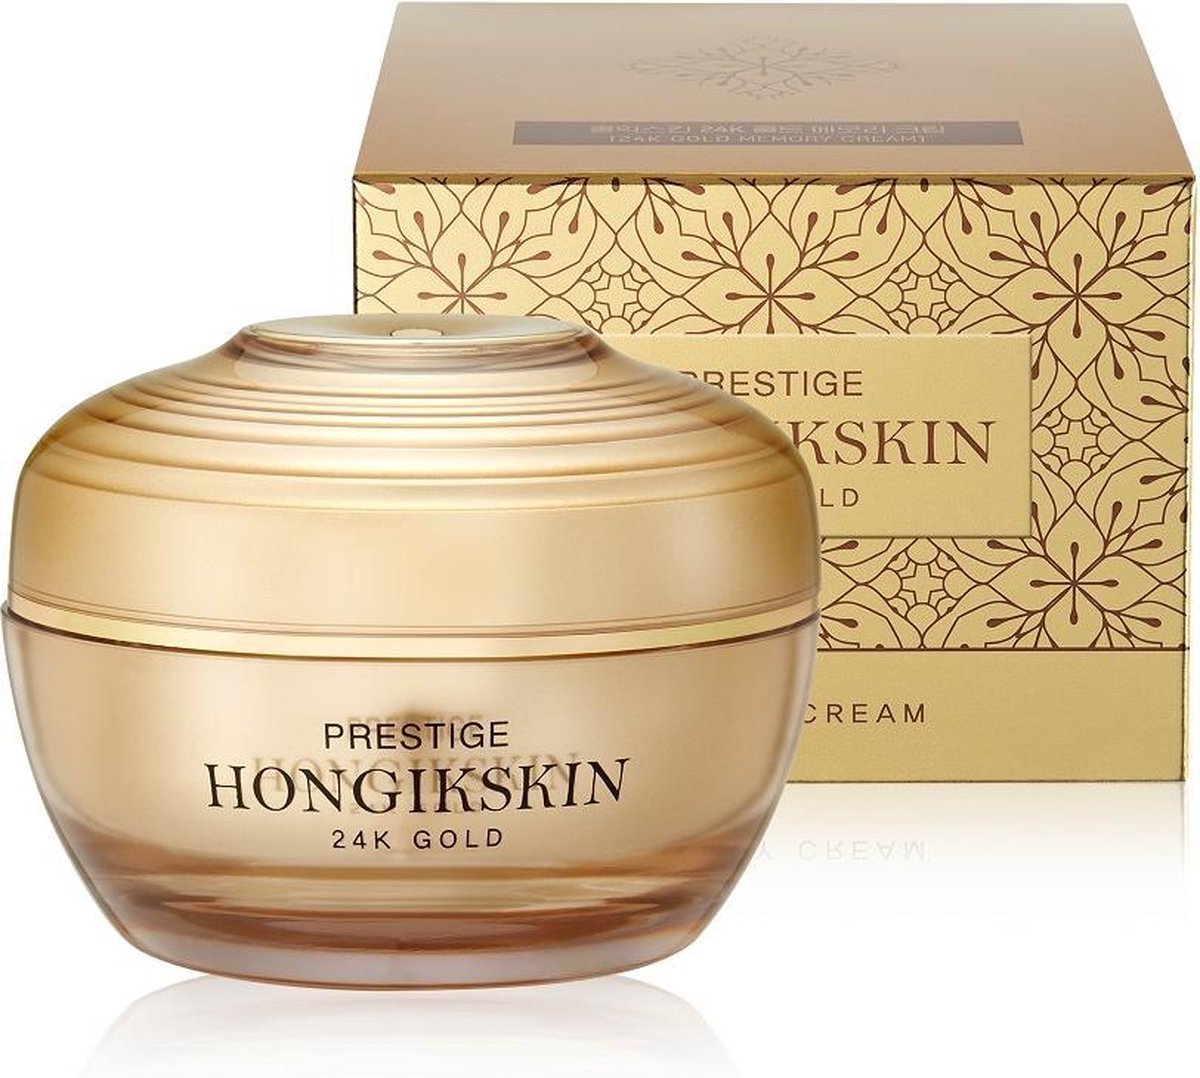 Hongik Skin - Prestige 24K Gold Cream Face Cream From Gold 80G